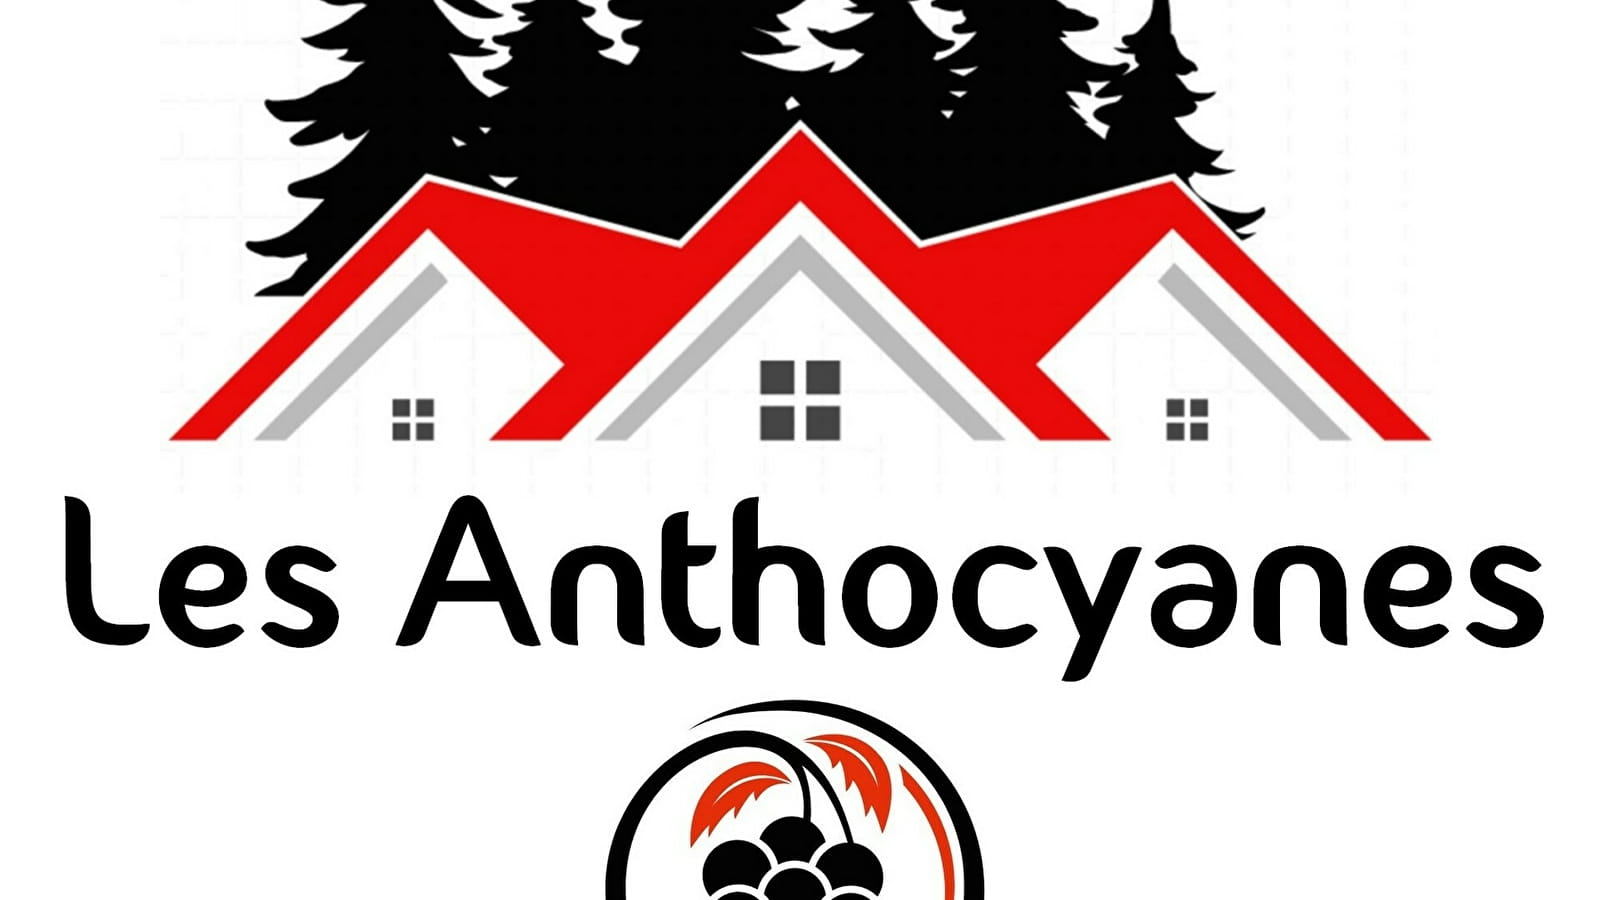 Les Anthocyanes